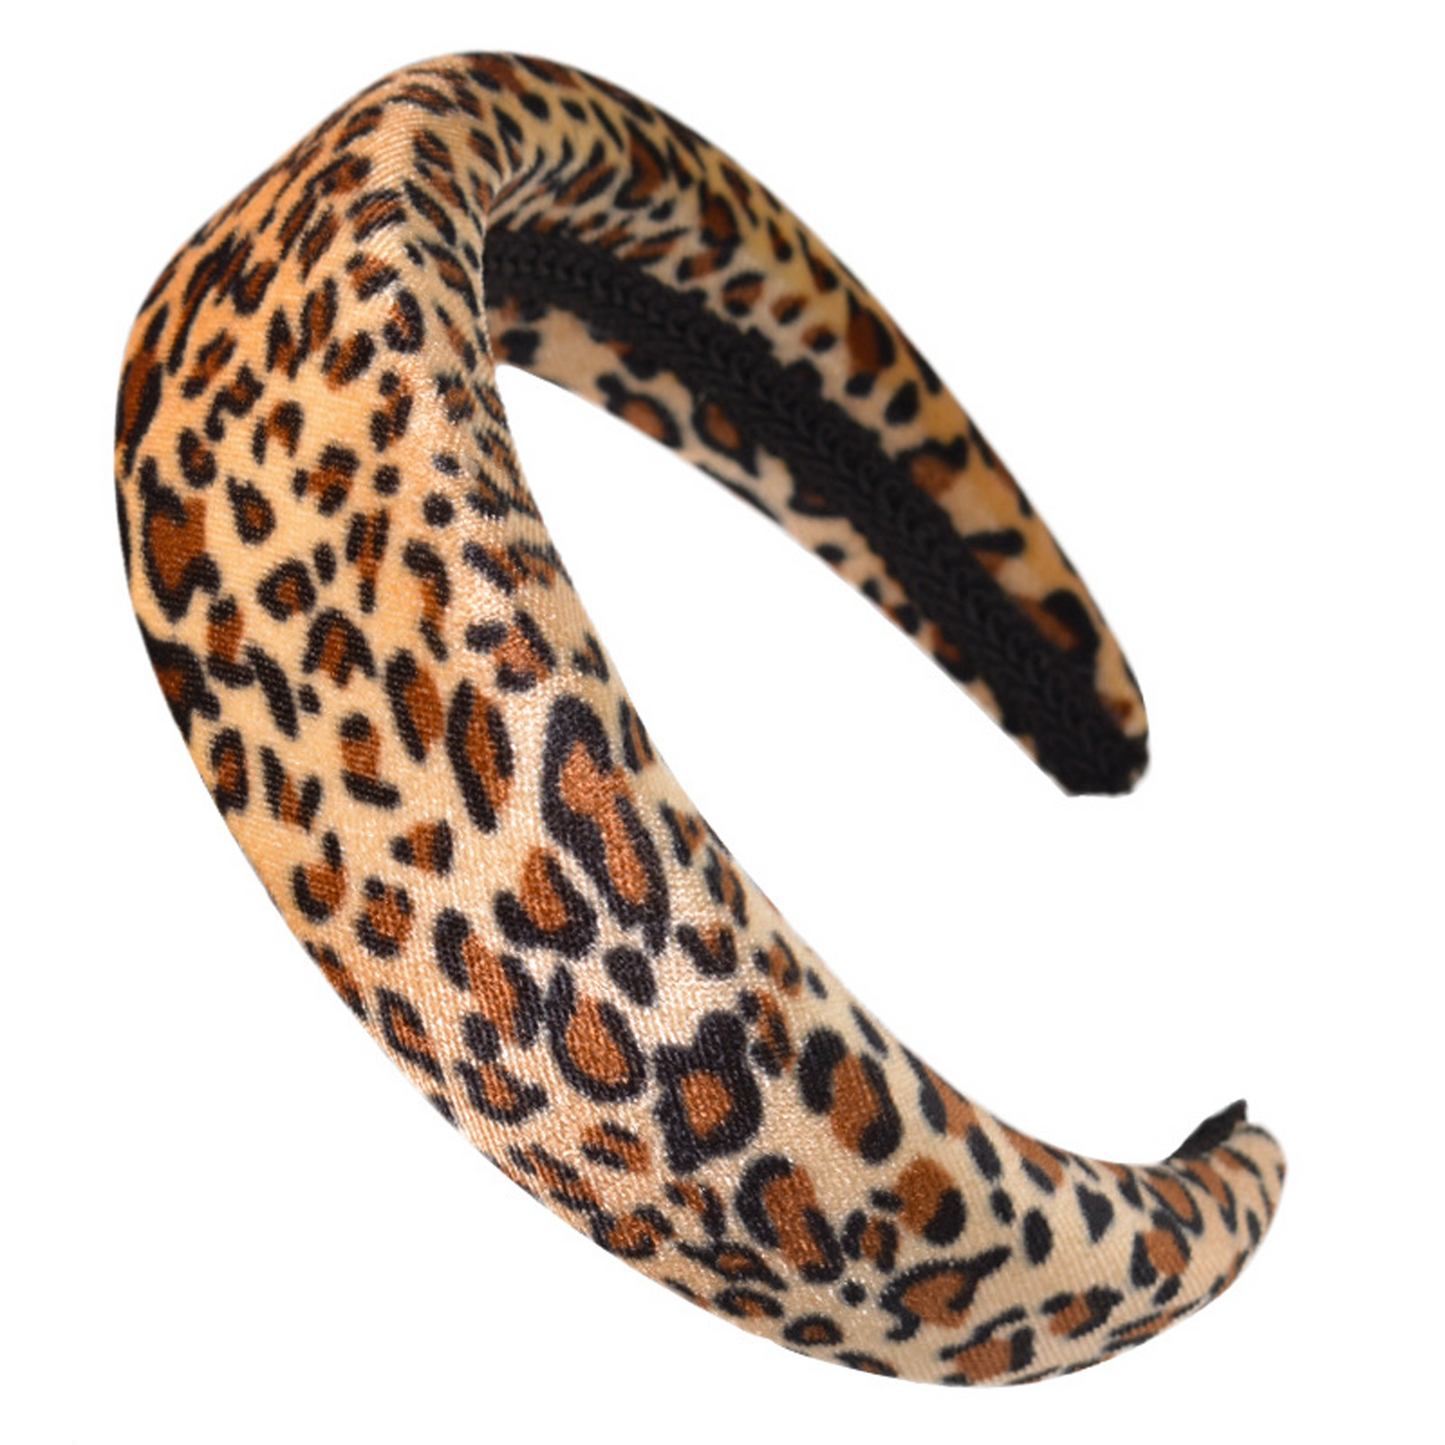 Velvet Sponge Leopard Headband